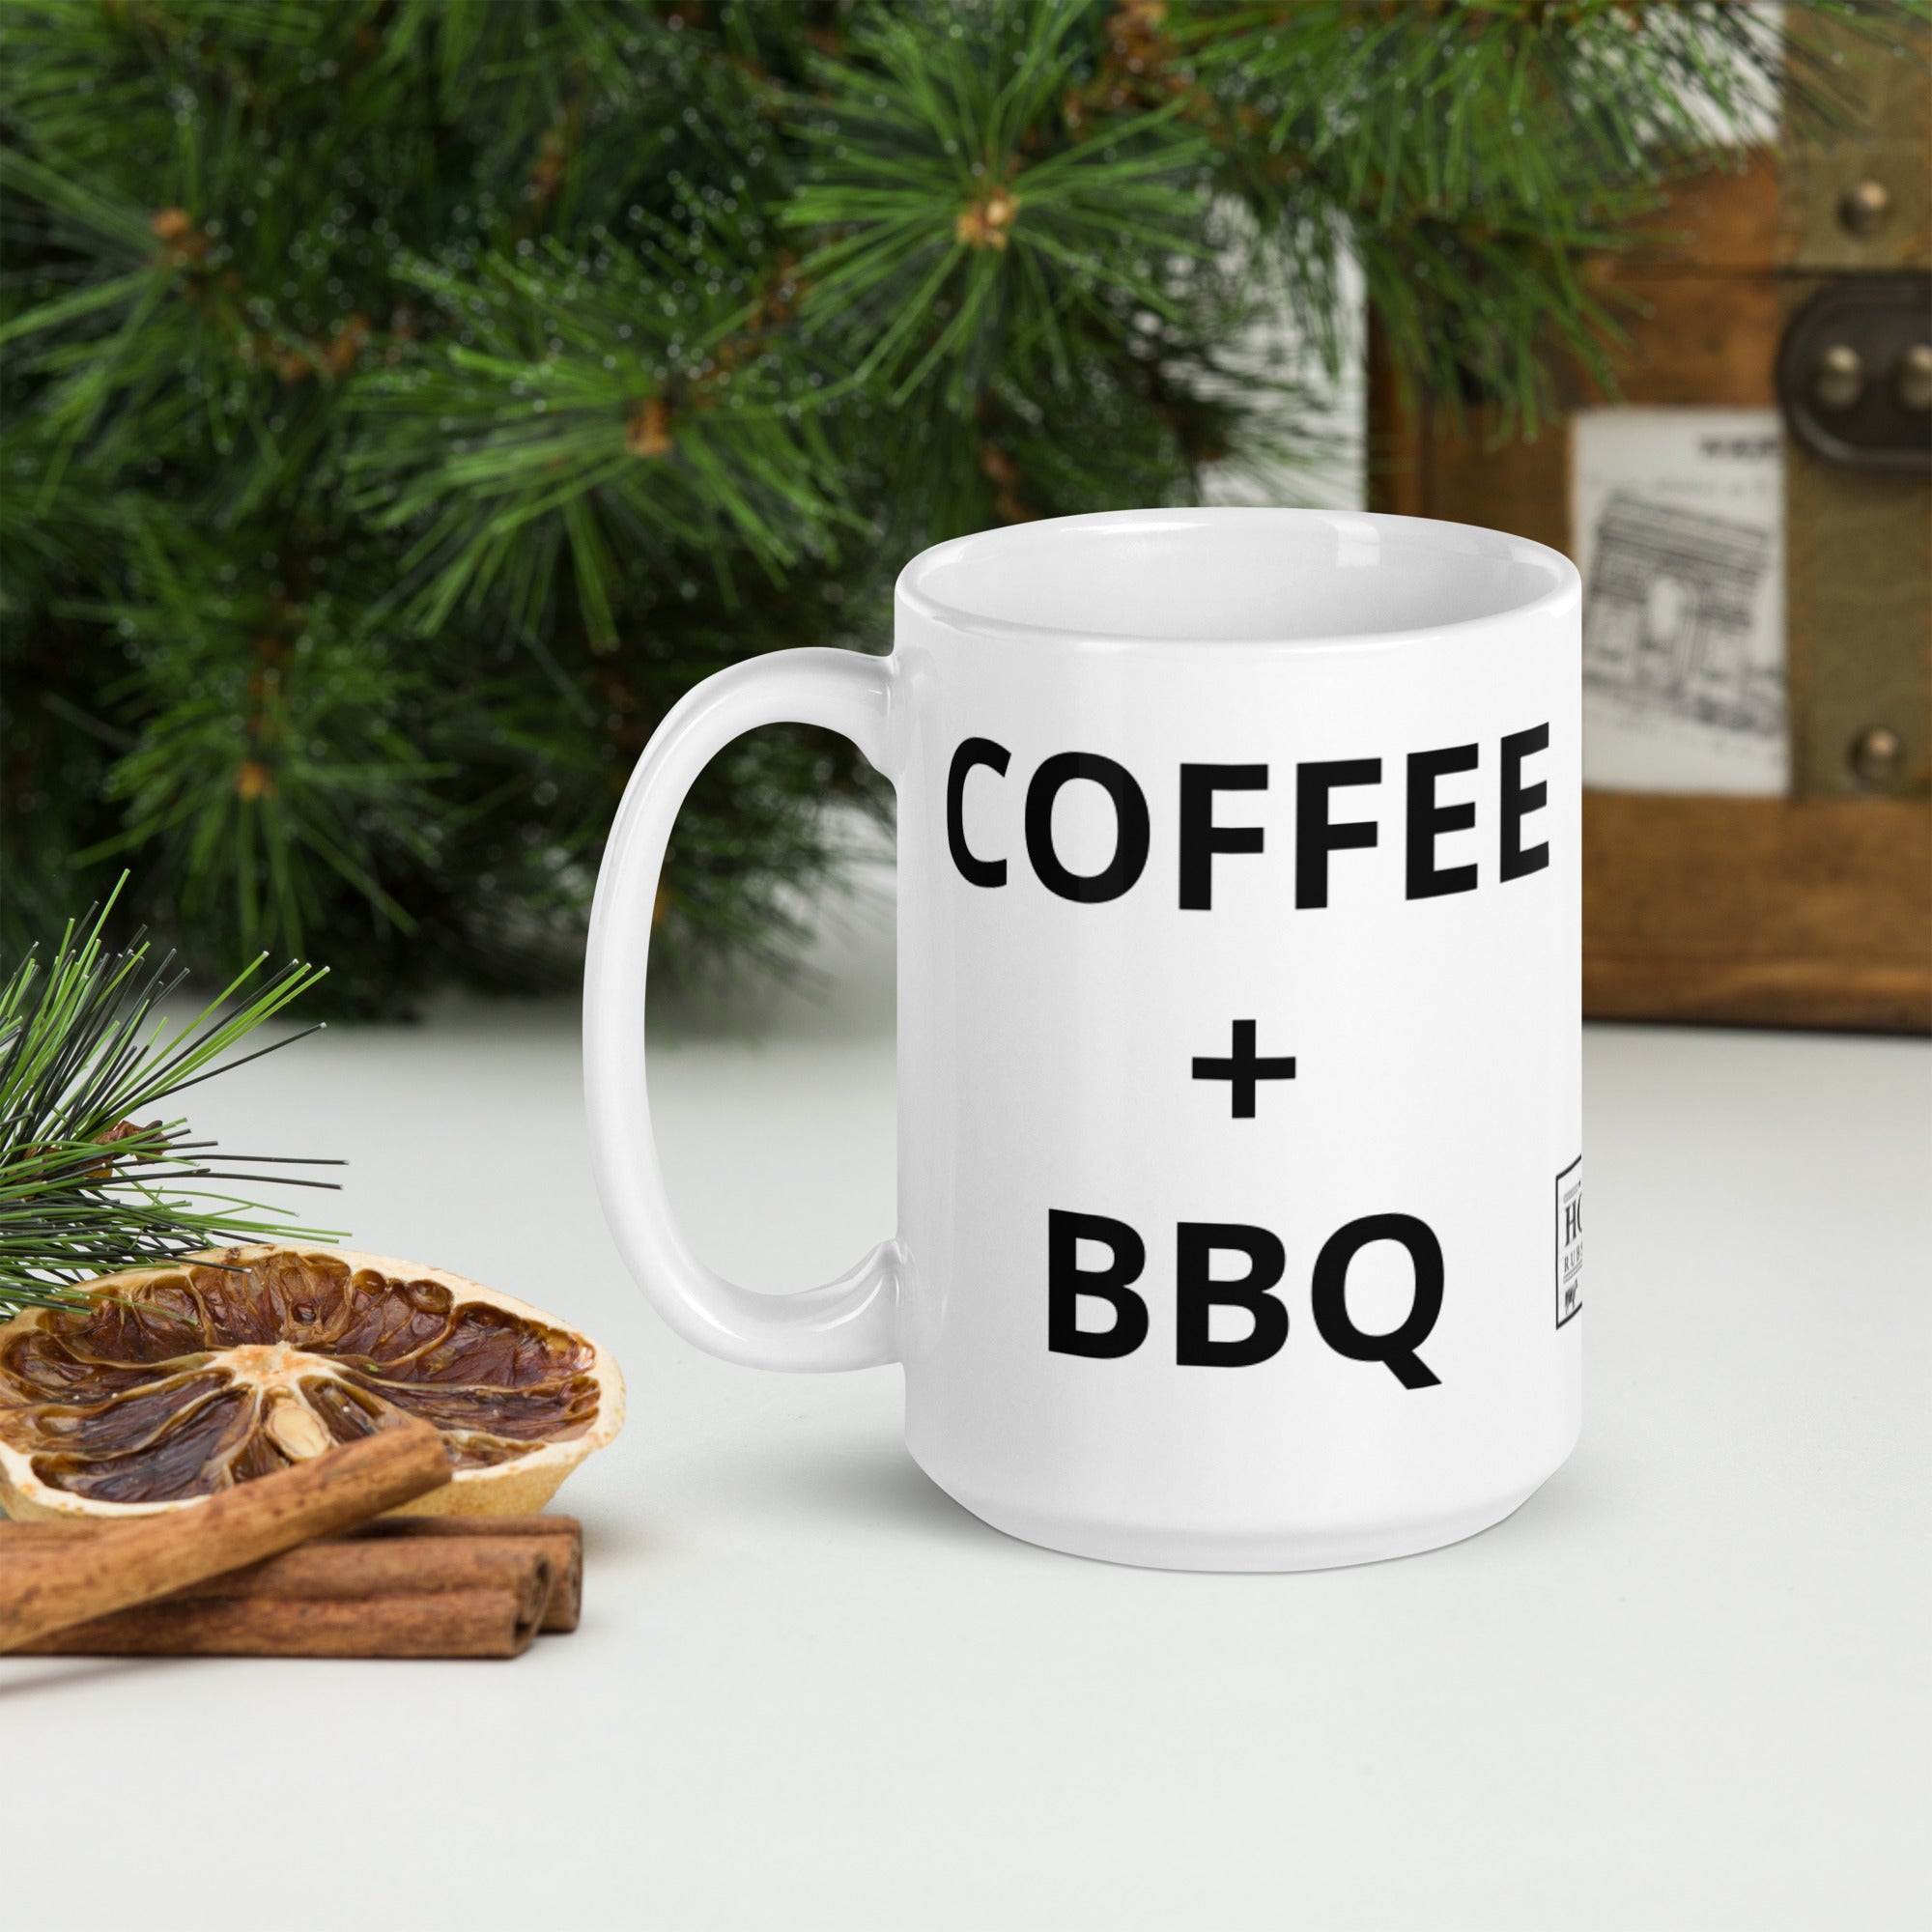 Coffee + BBQ - 11 or 15 oz mug